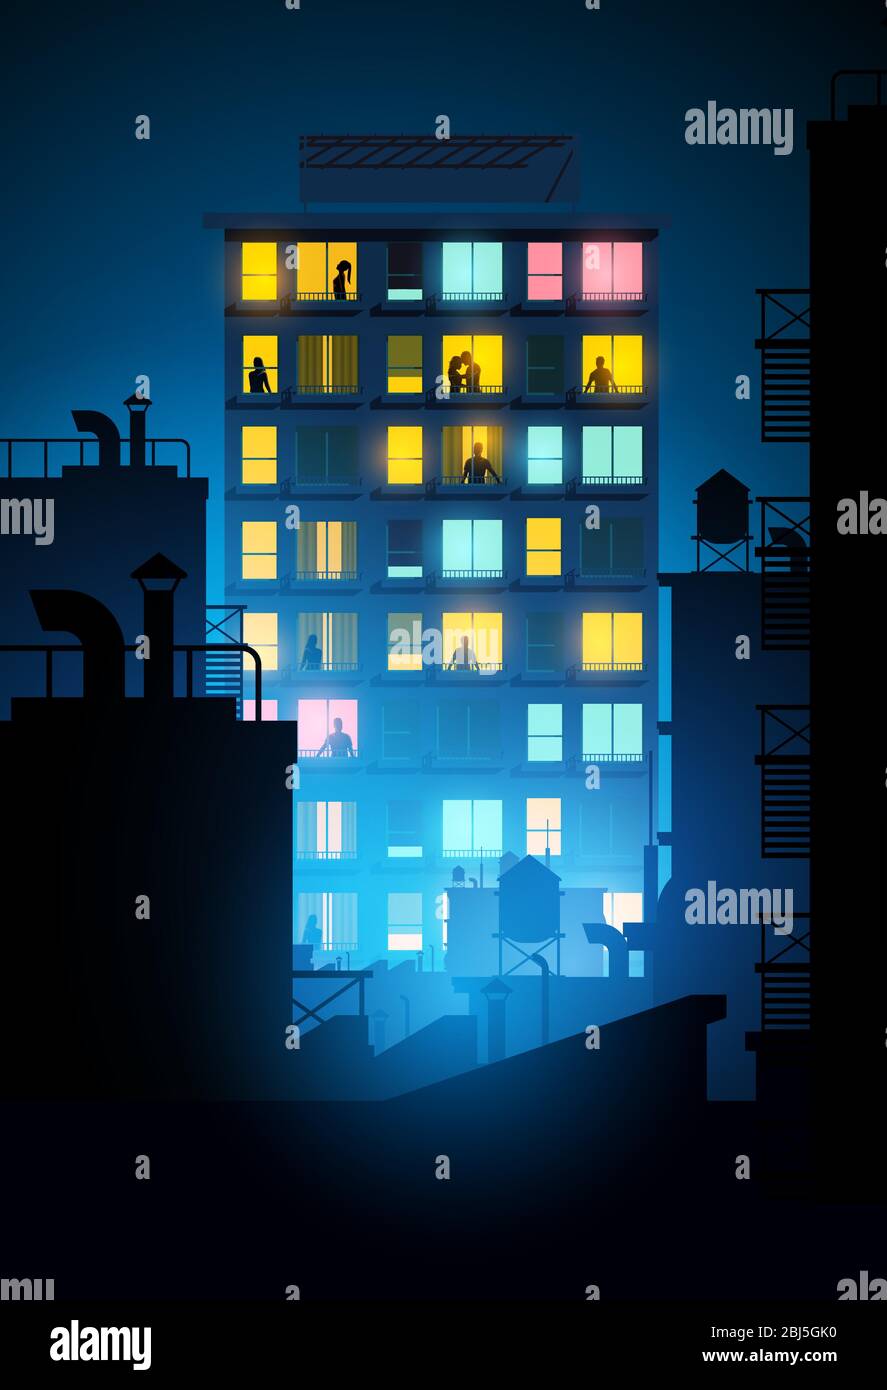 Un grand bloc d'appartements avec des gens à l'intérieur donnant sur les fenêtres la nuit. Illustration vectorielle. Illustration de Vecteur